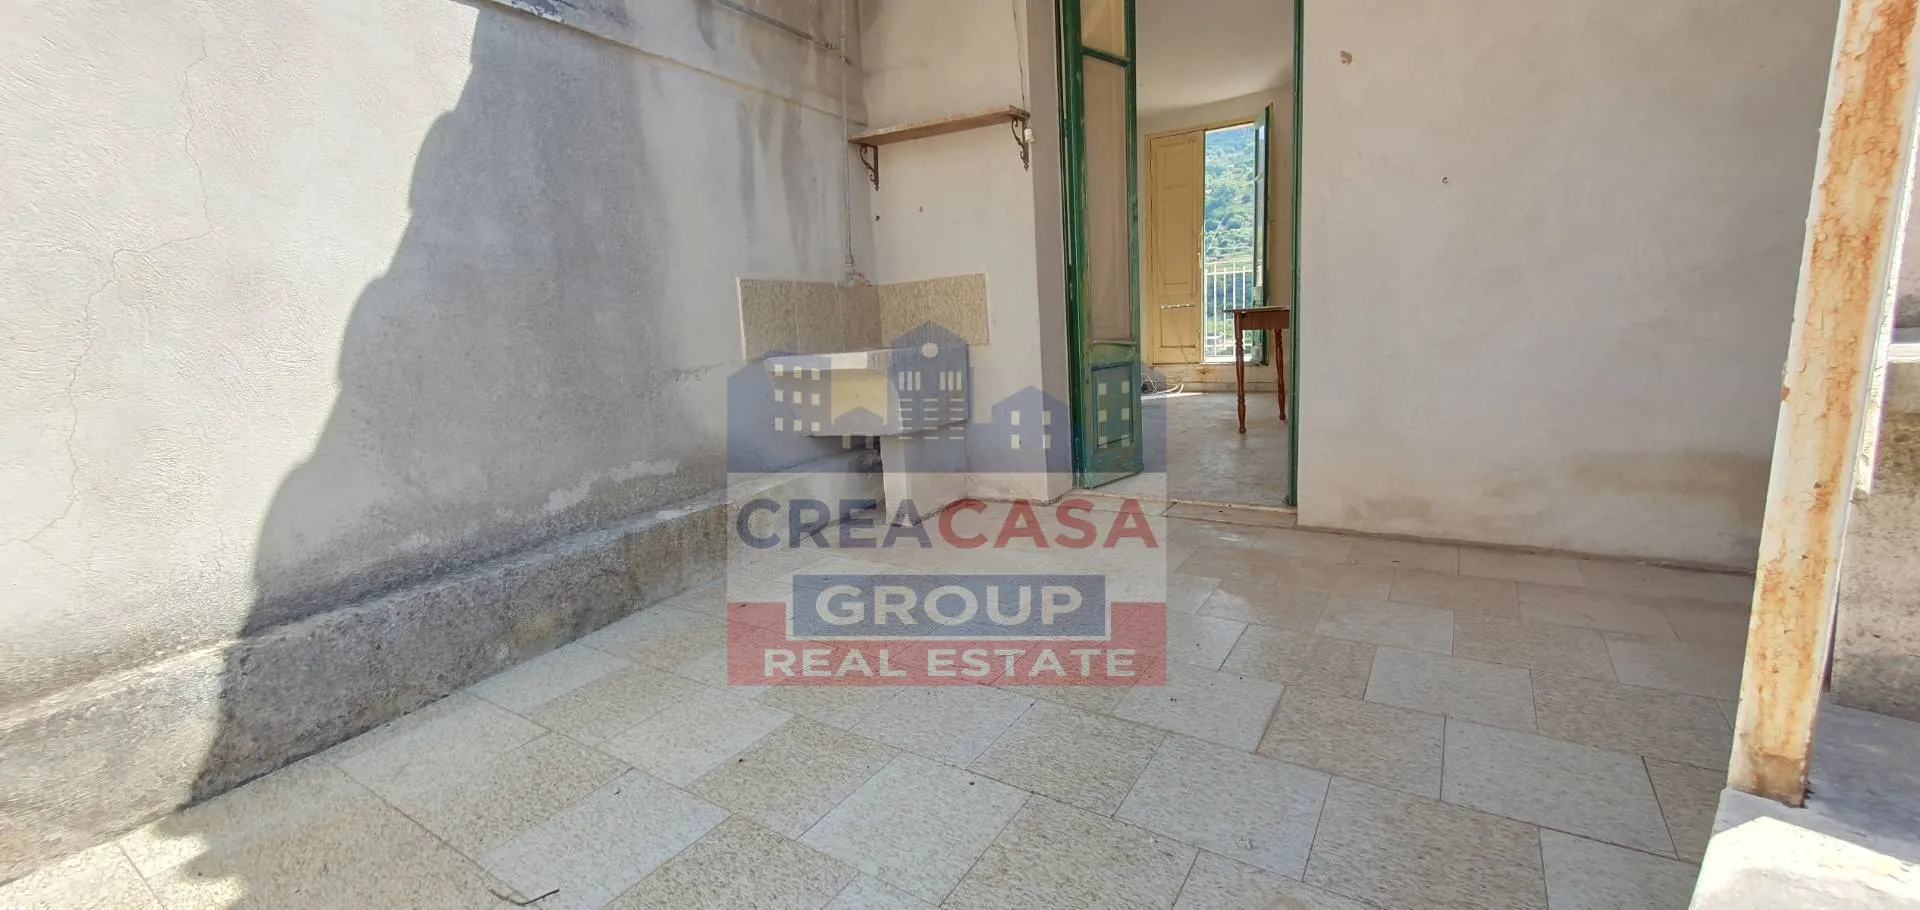 Immagine per Casa indipendente in vendita a Graniti Fabio Filzi